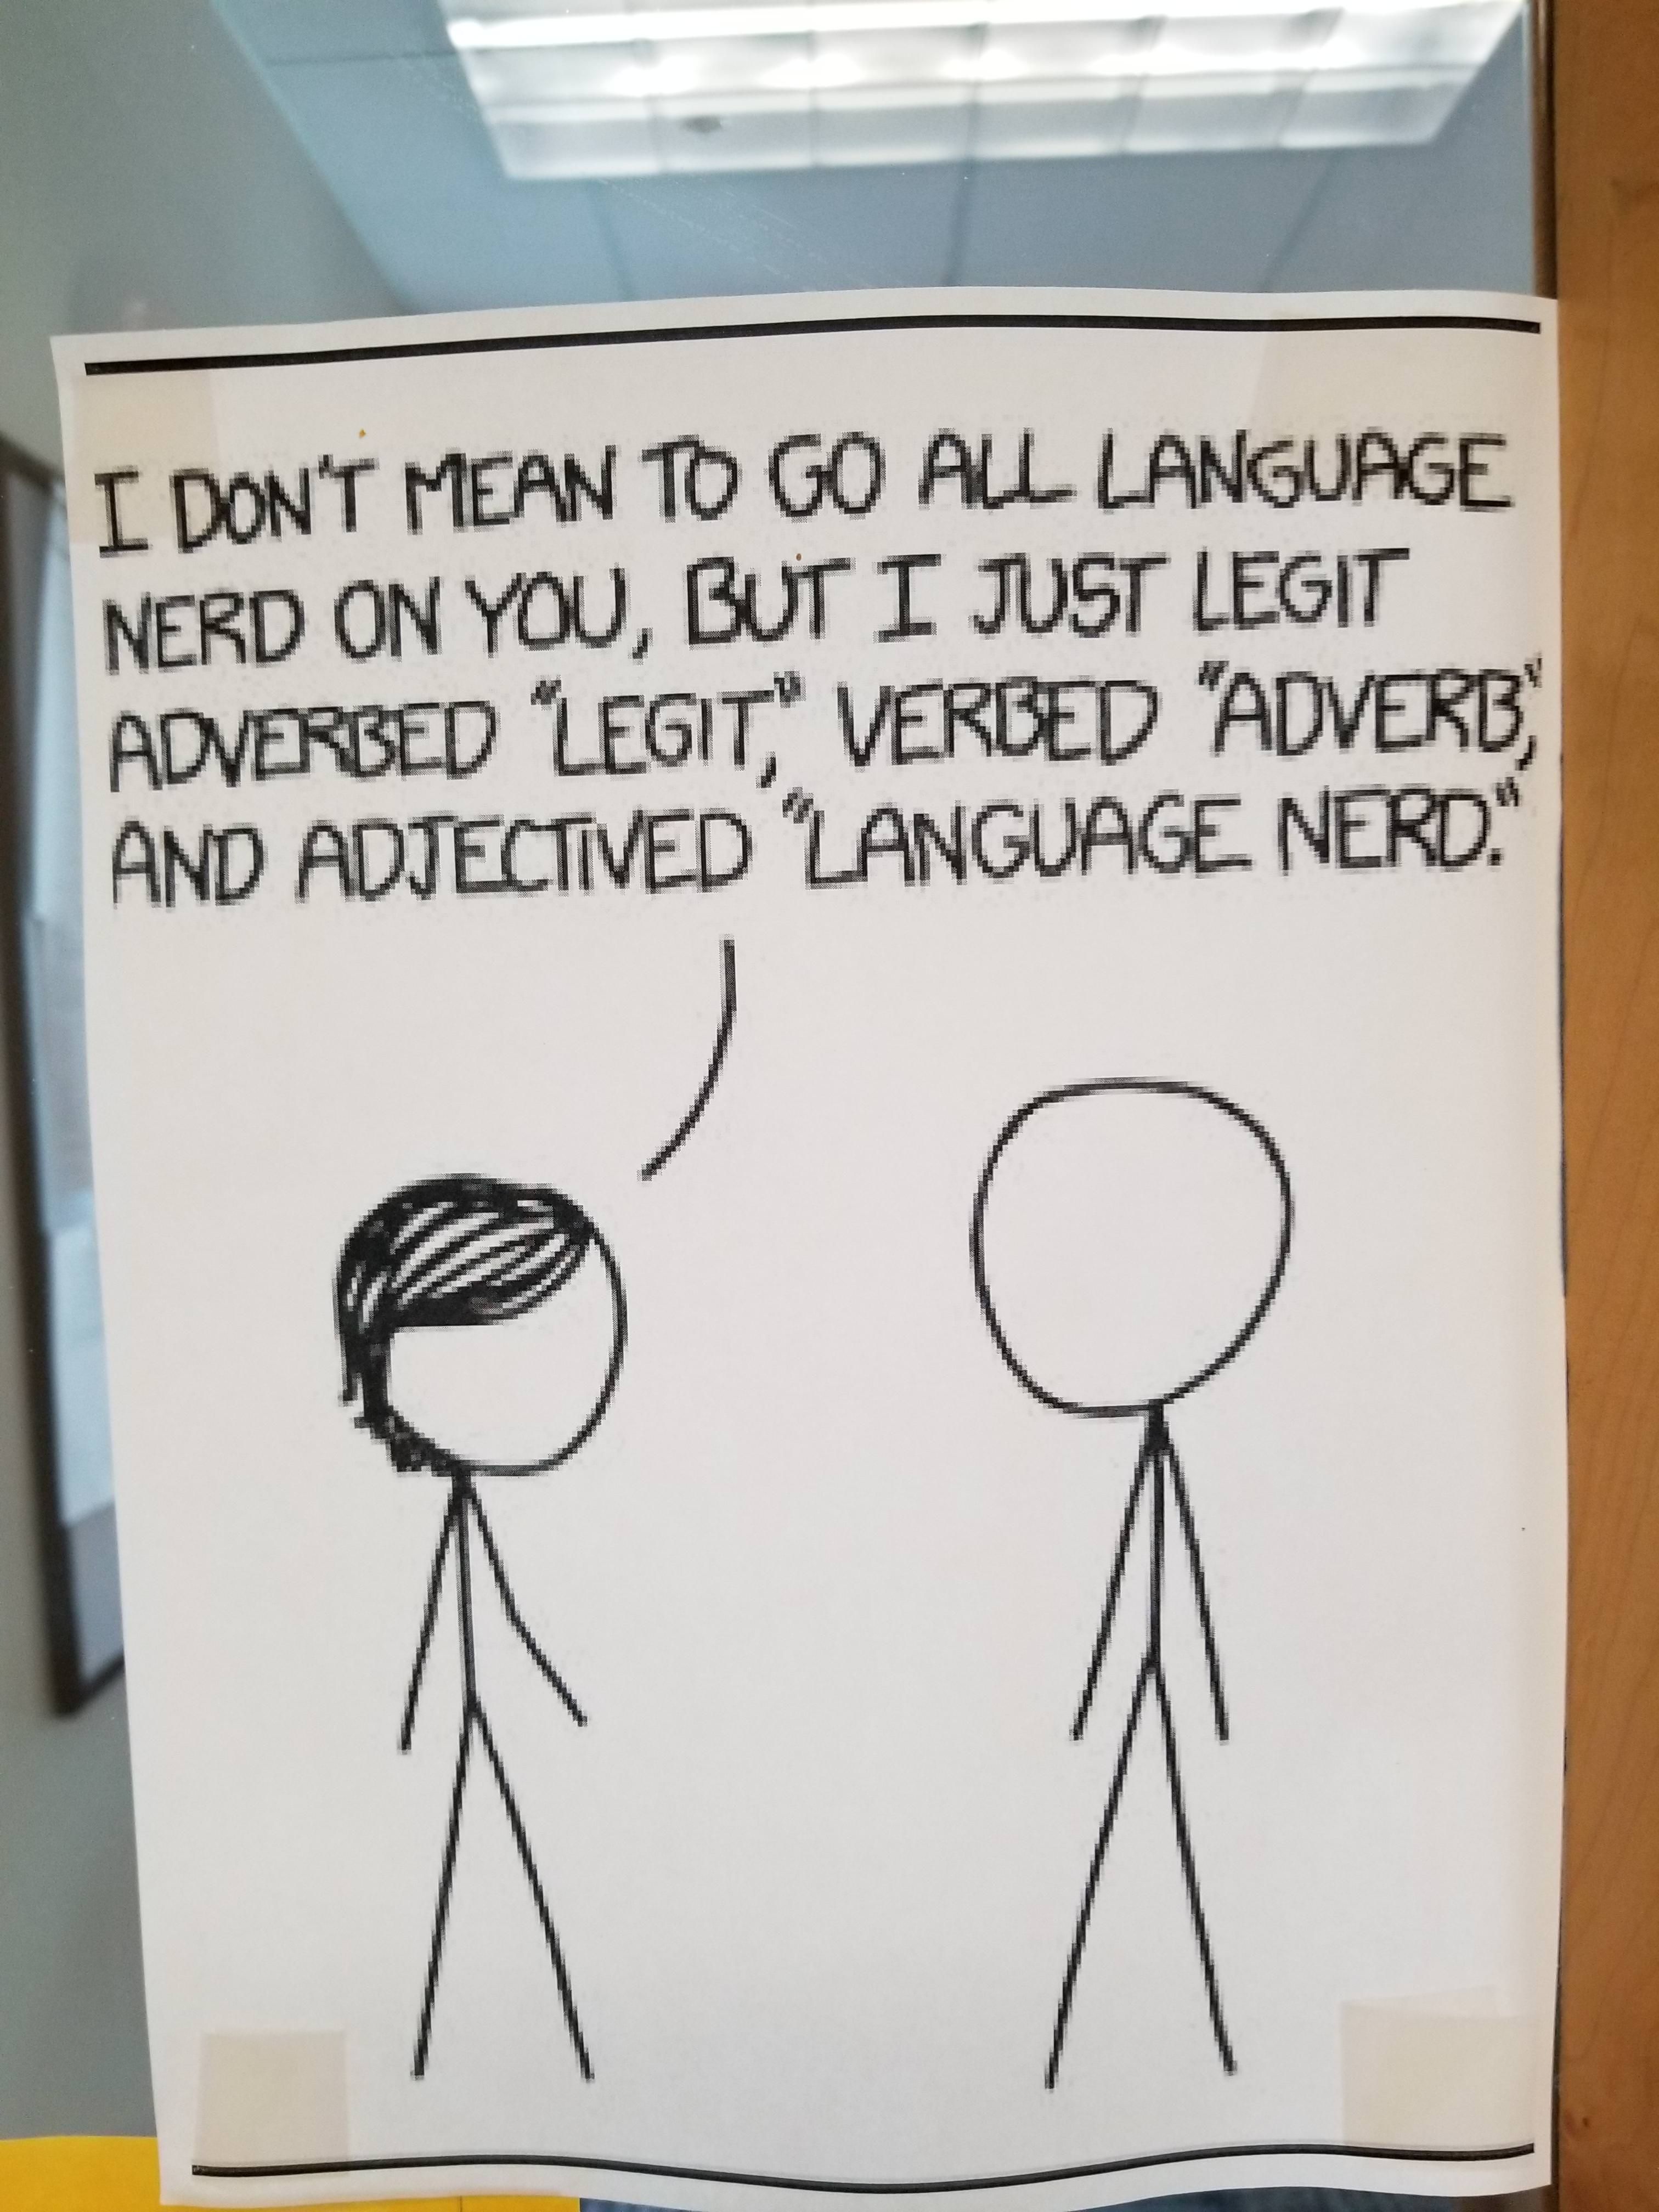 Seen on an English professor's door